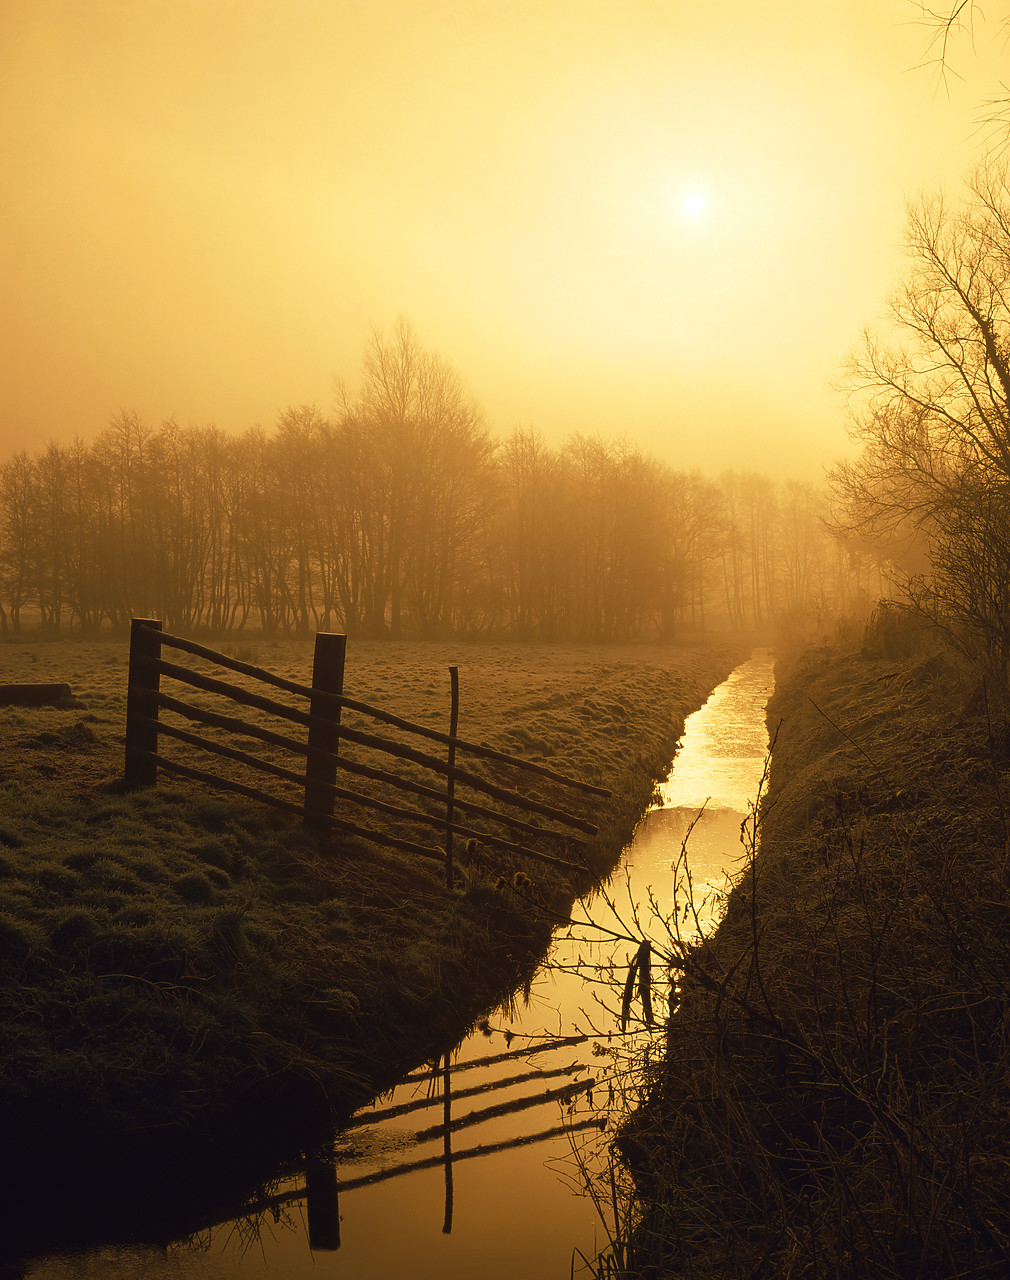 #891850-1 - Misty Sunrise over Dyke, Upton, Norfolk, England